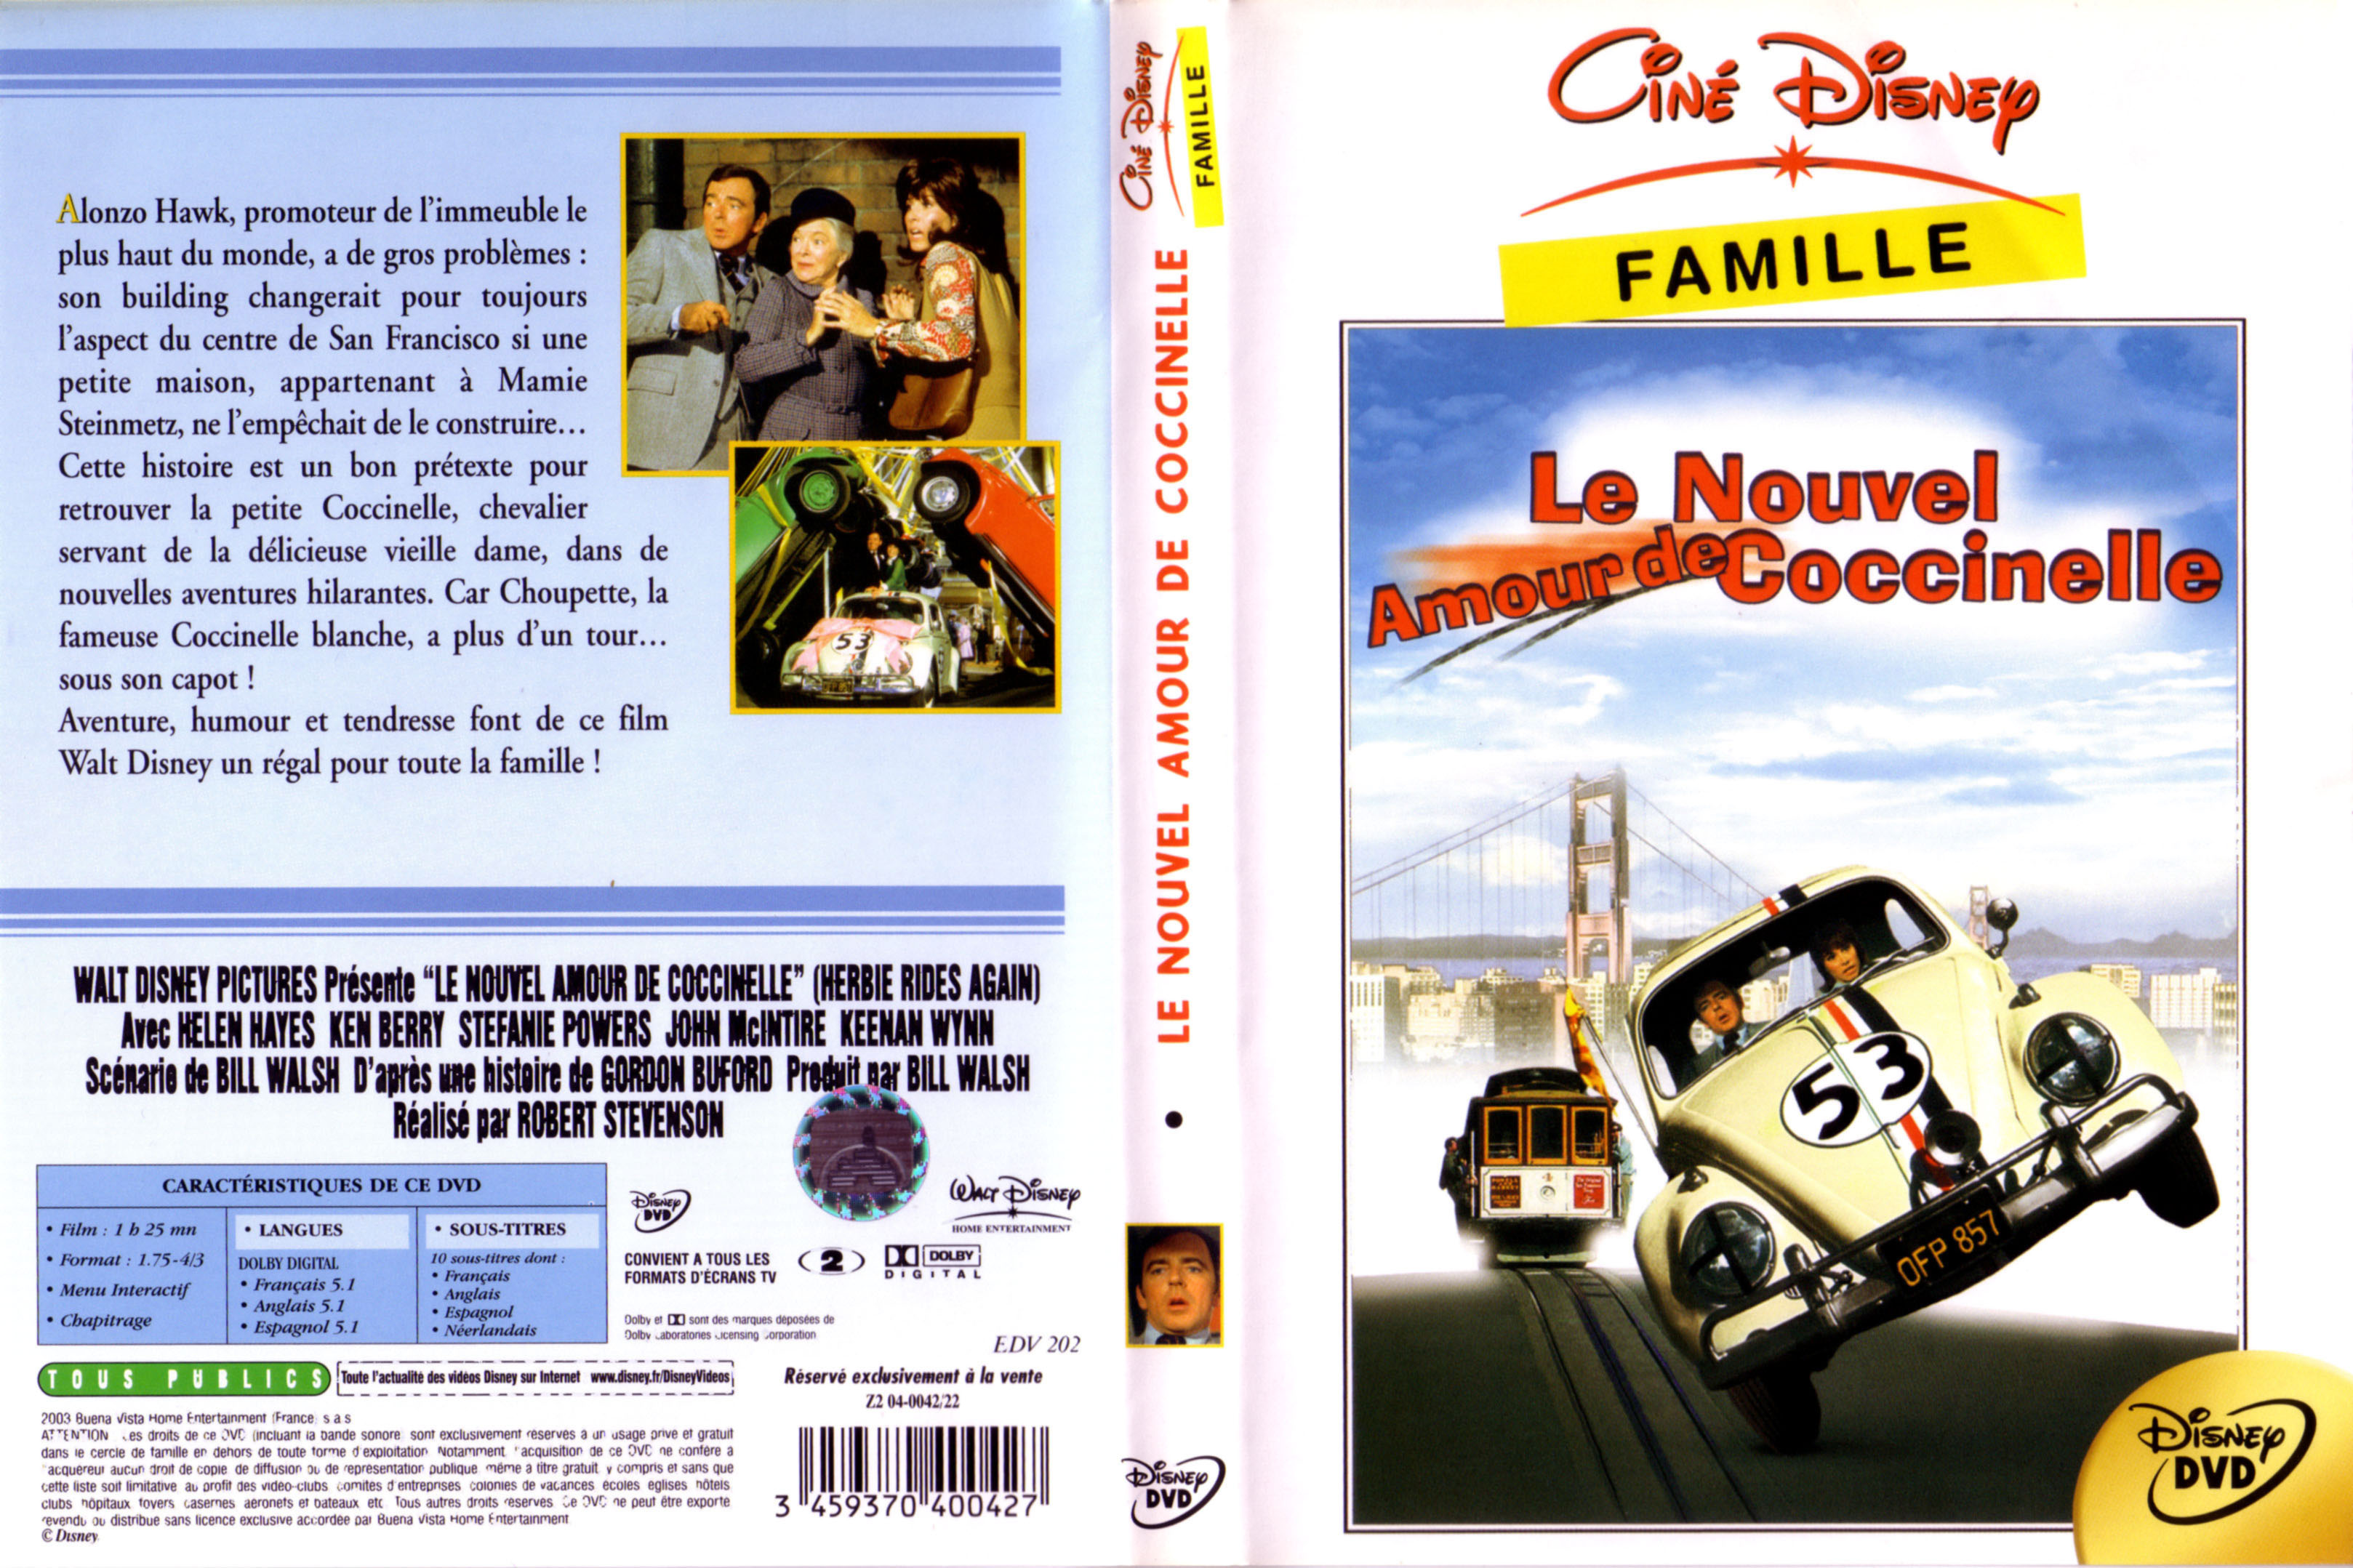 Jaquette DVD Le nouvel amour de coccinelle v2